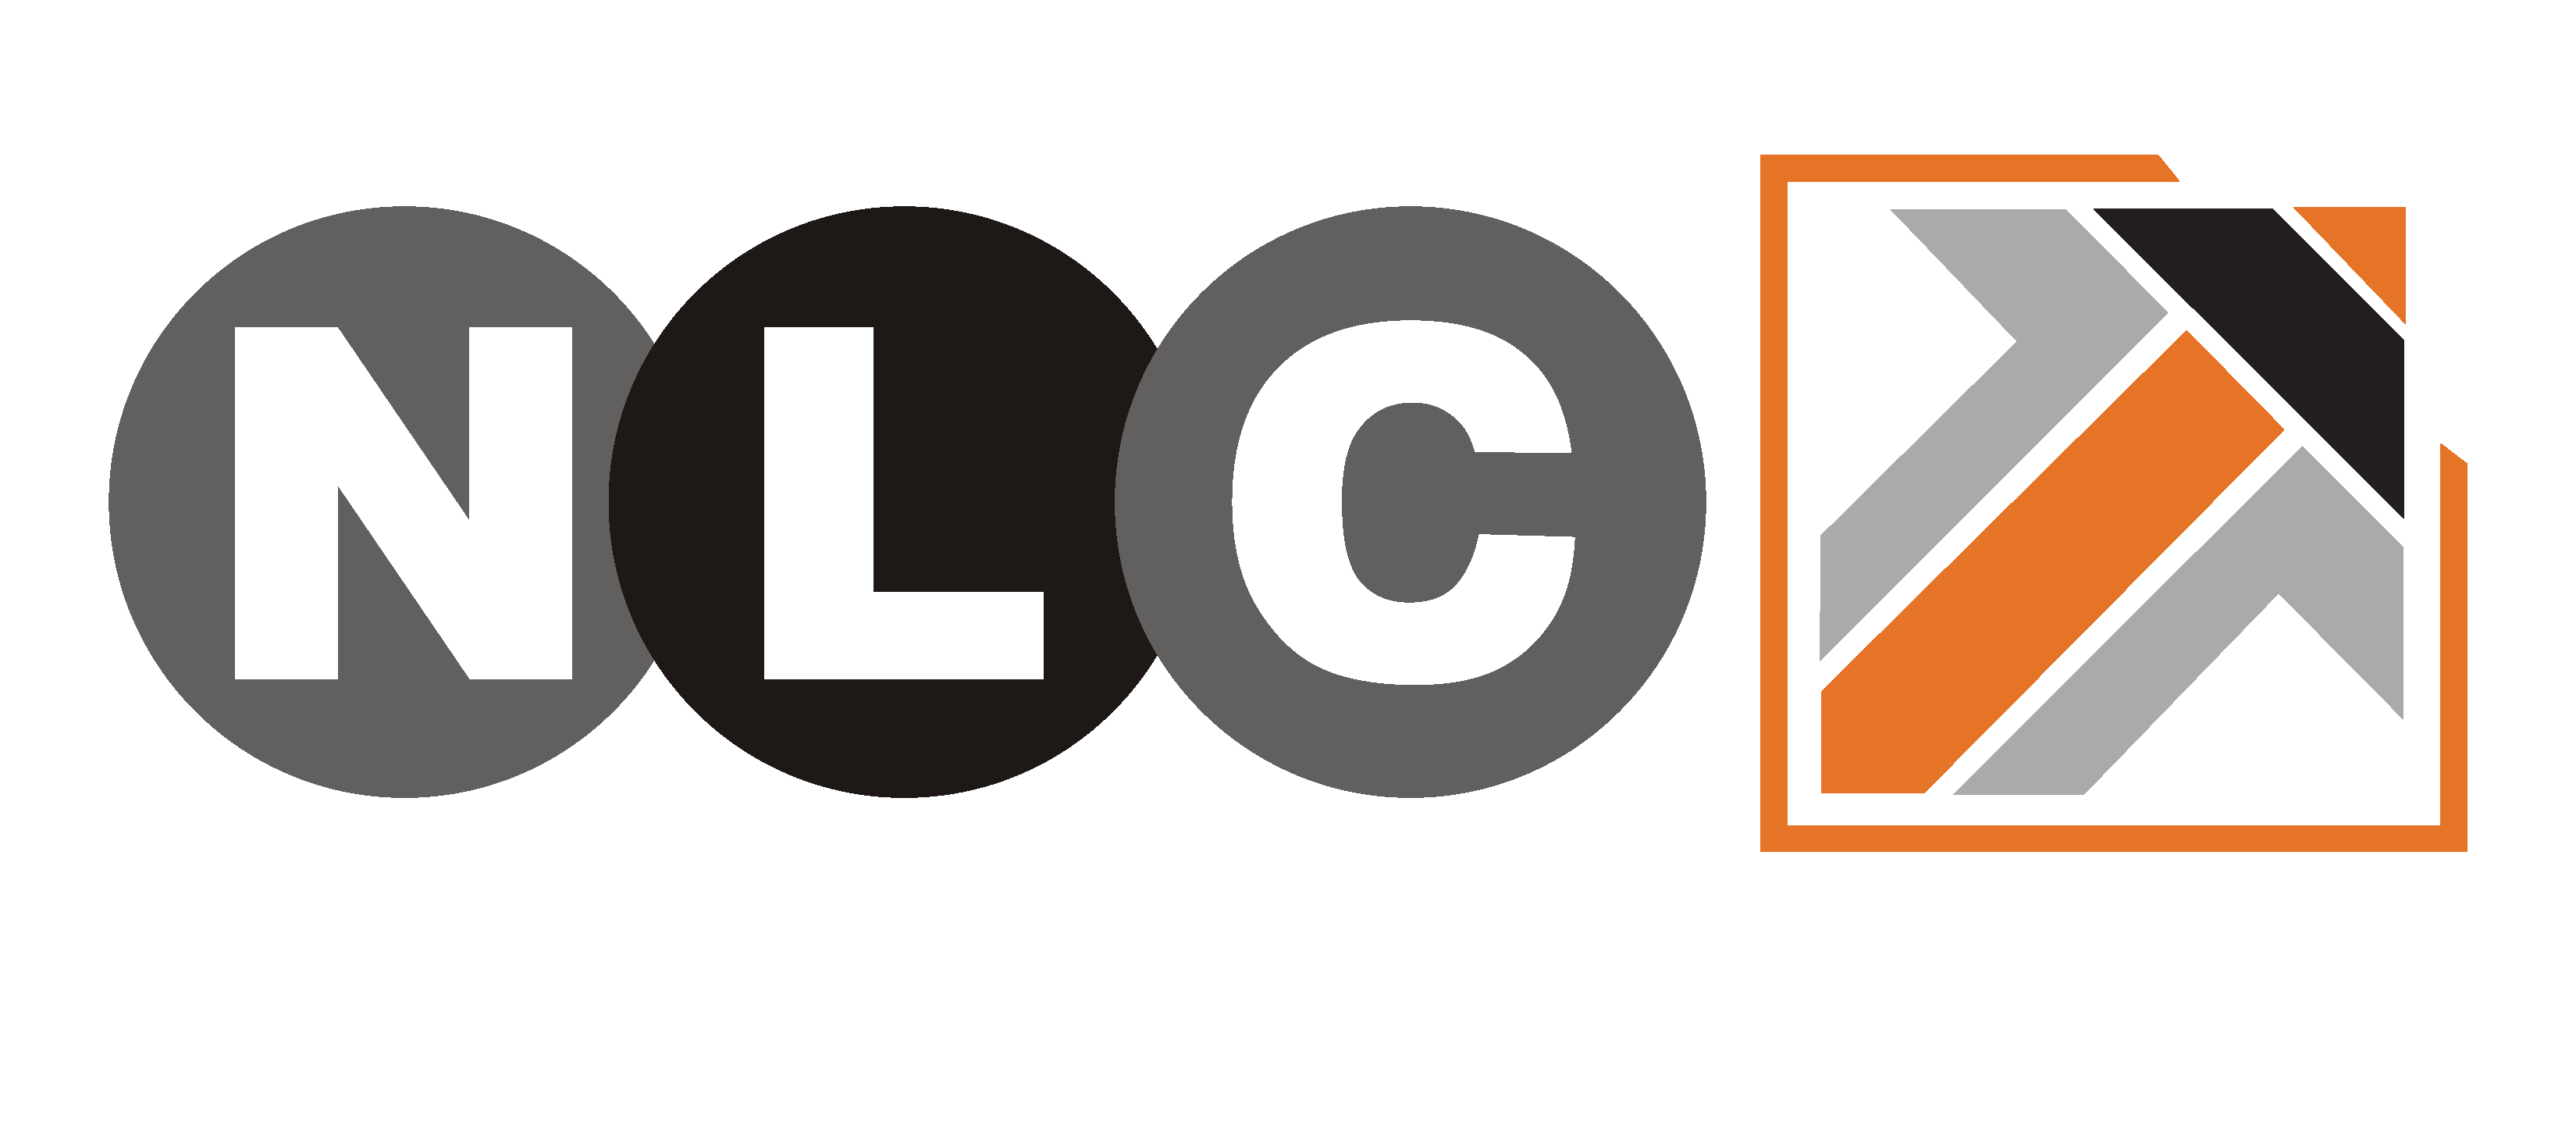 Cell logistic. НЛК лого. Национальная логистическая компания НЛК логотип. Значок NLC. Национальные логистические технологии логотип.